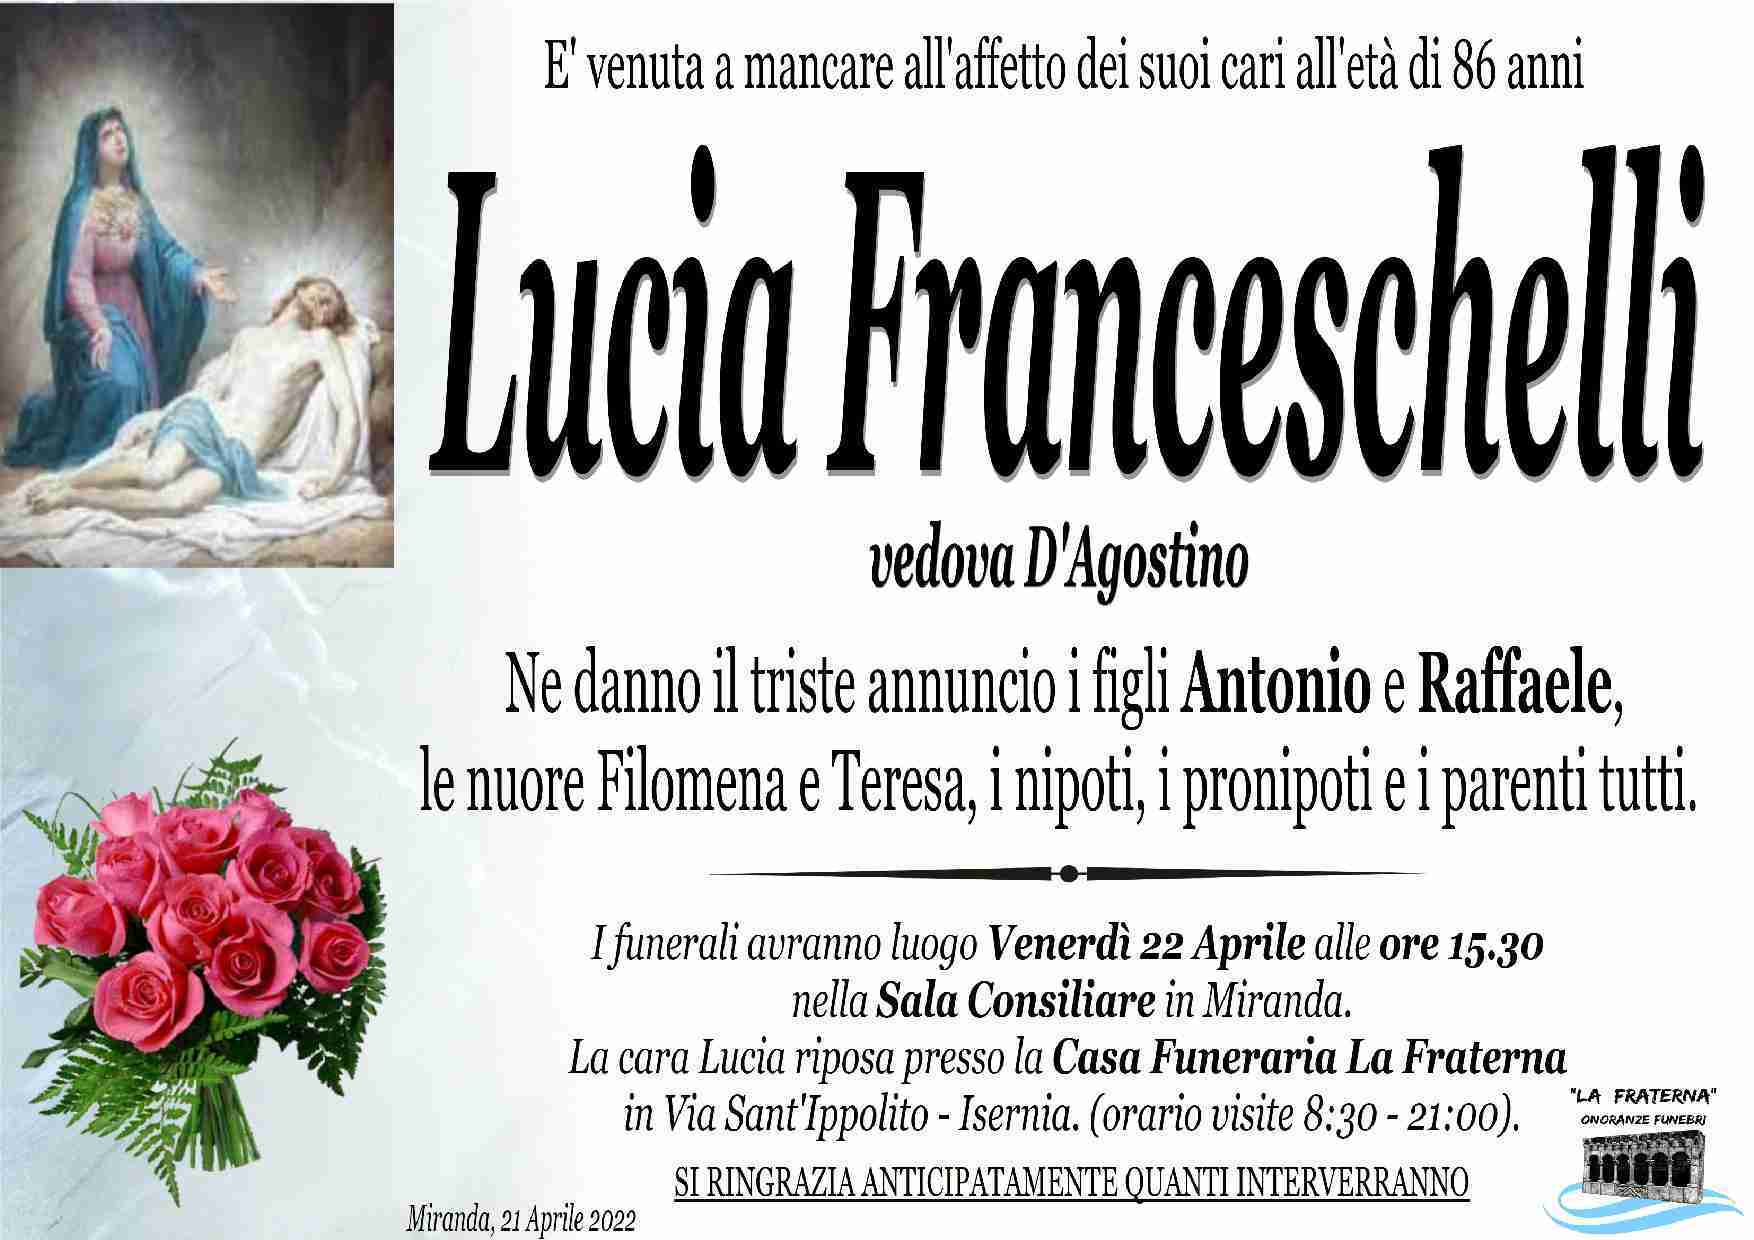 Lucia Franceschelli